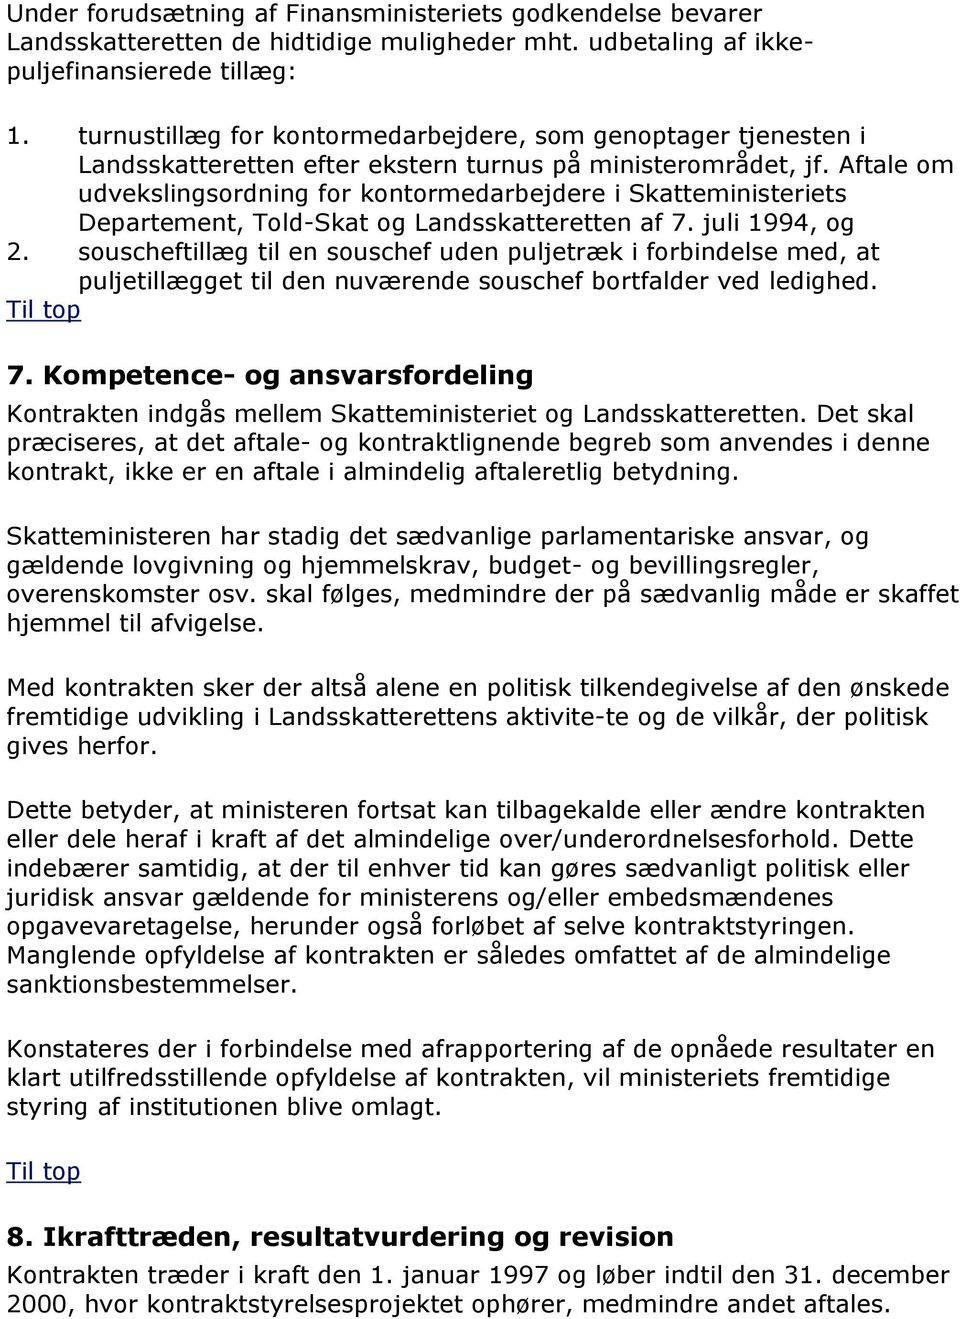 Aftale om udvekslingsordning for kontormedarbejdere i Skatteministeriets Departement, Told-Skat og Landsskatteretten af 7. juli 1994, og 2.